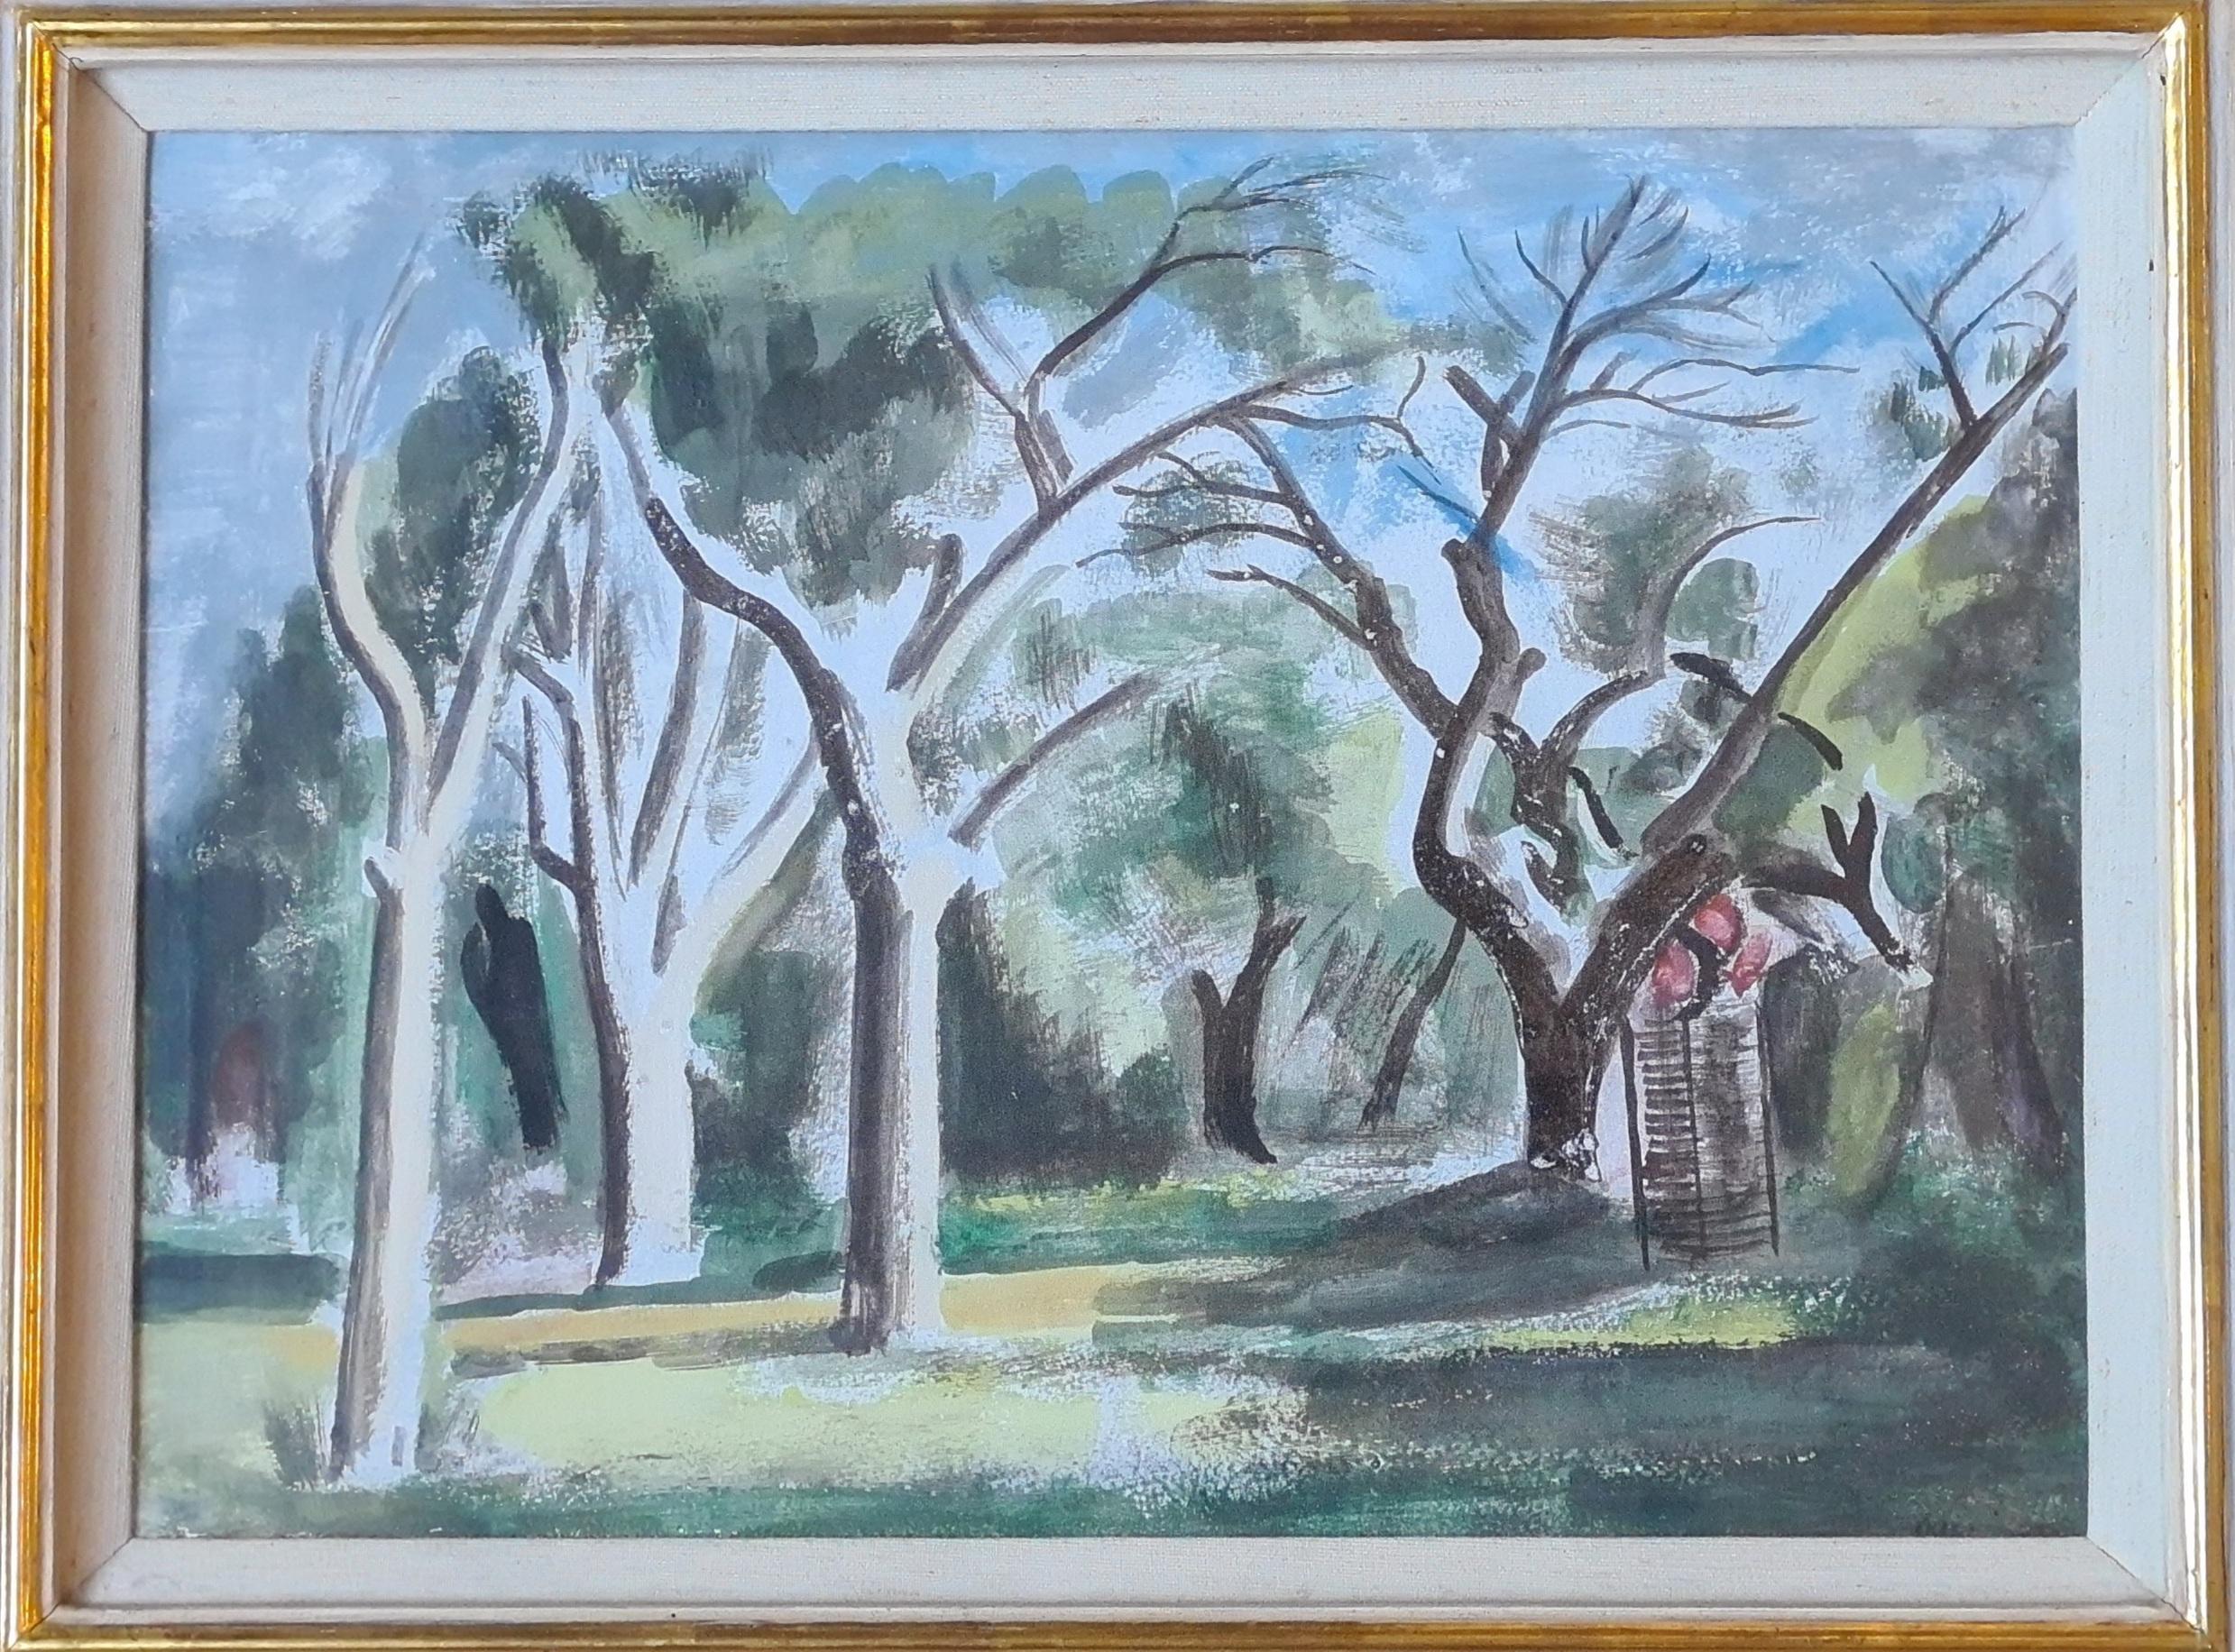 Cookham Dean, Paysage post-impressionniste, hommage à Cézanne - Art de Bernard Meninsky